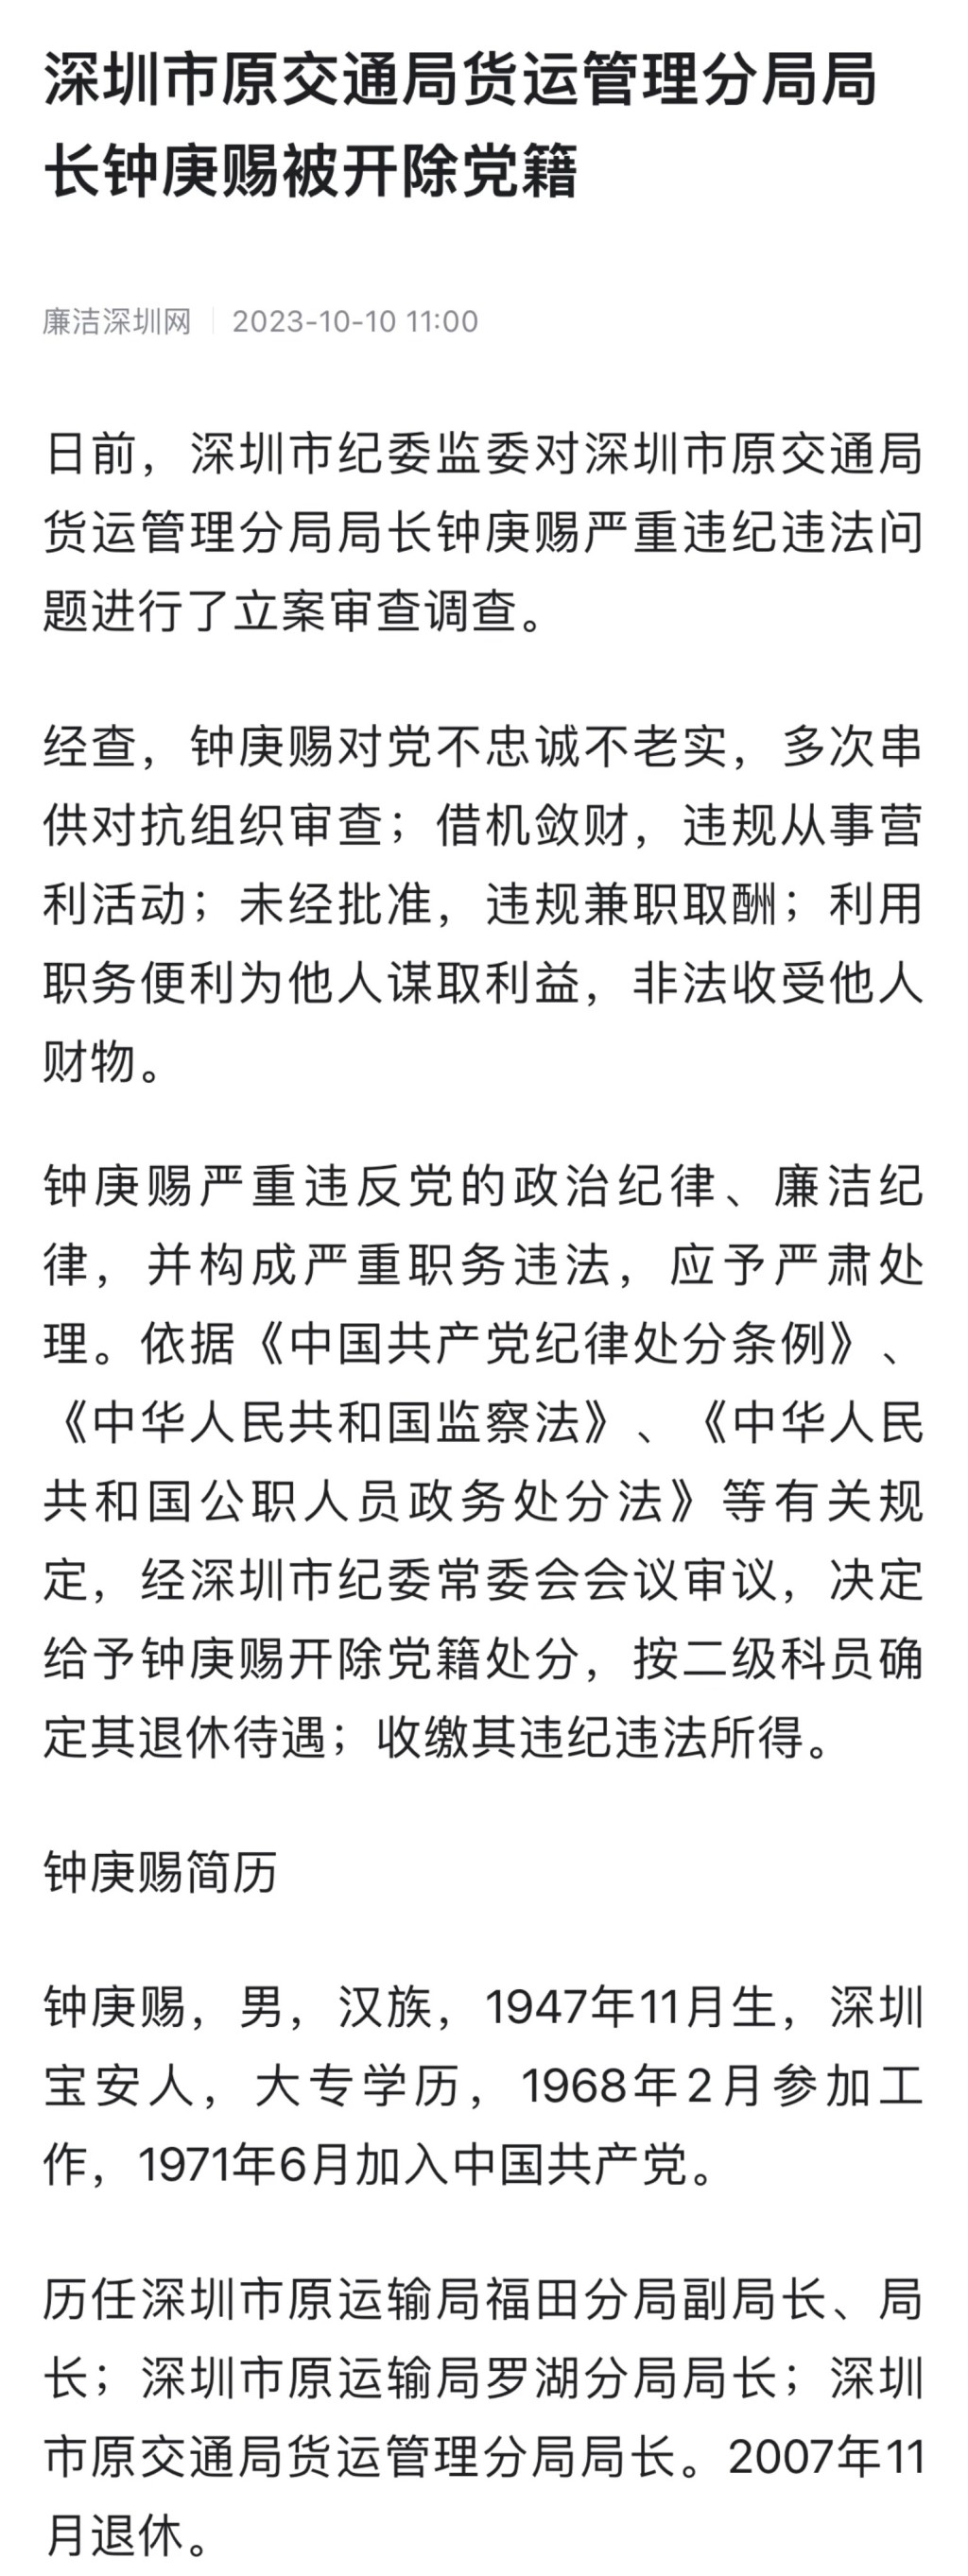 深圳原交通局货运管理分局局长钟庚赐被开除党藉及收缴违法所得。